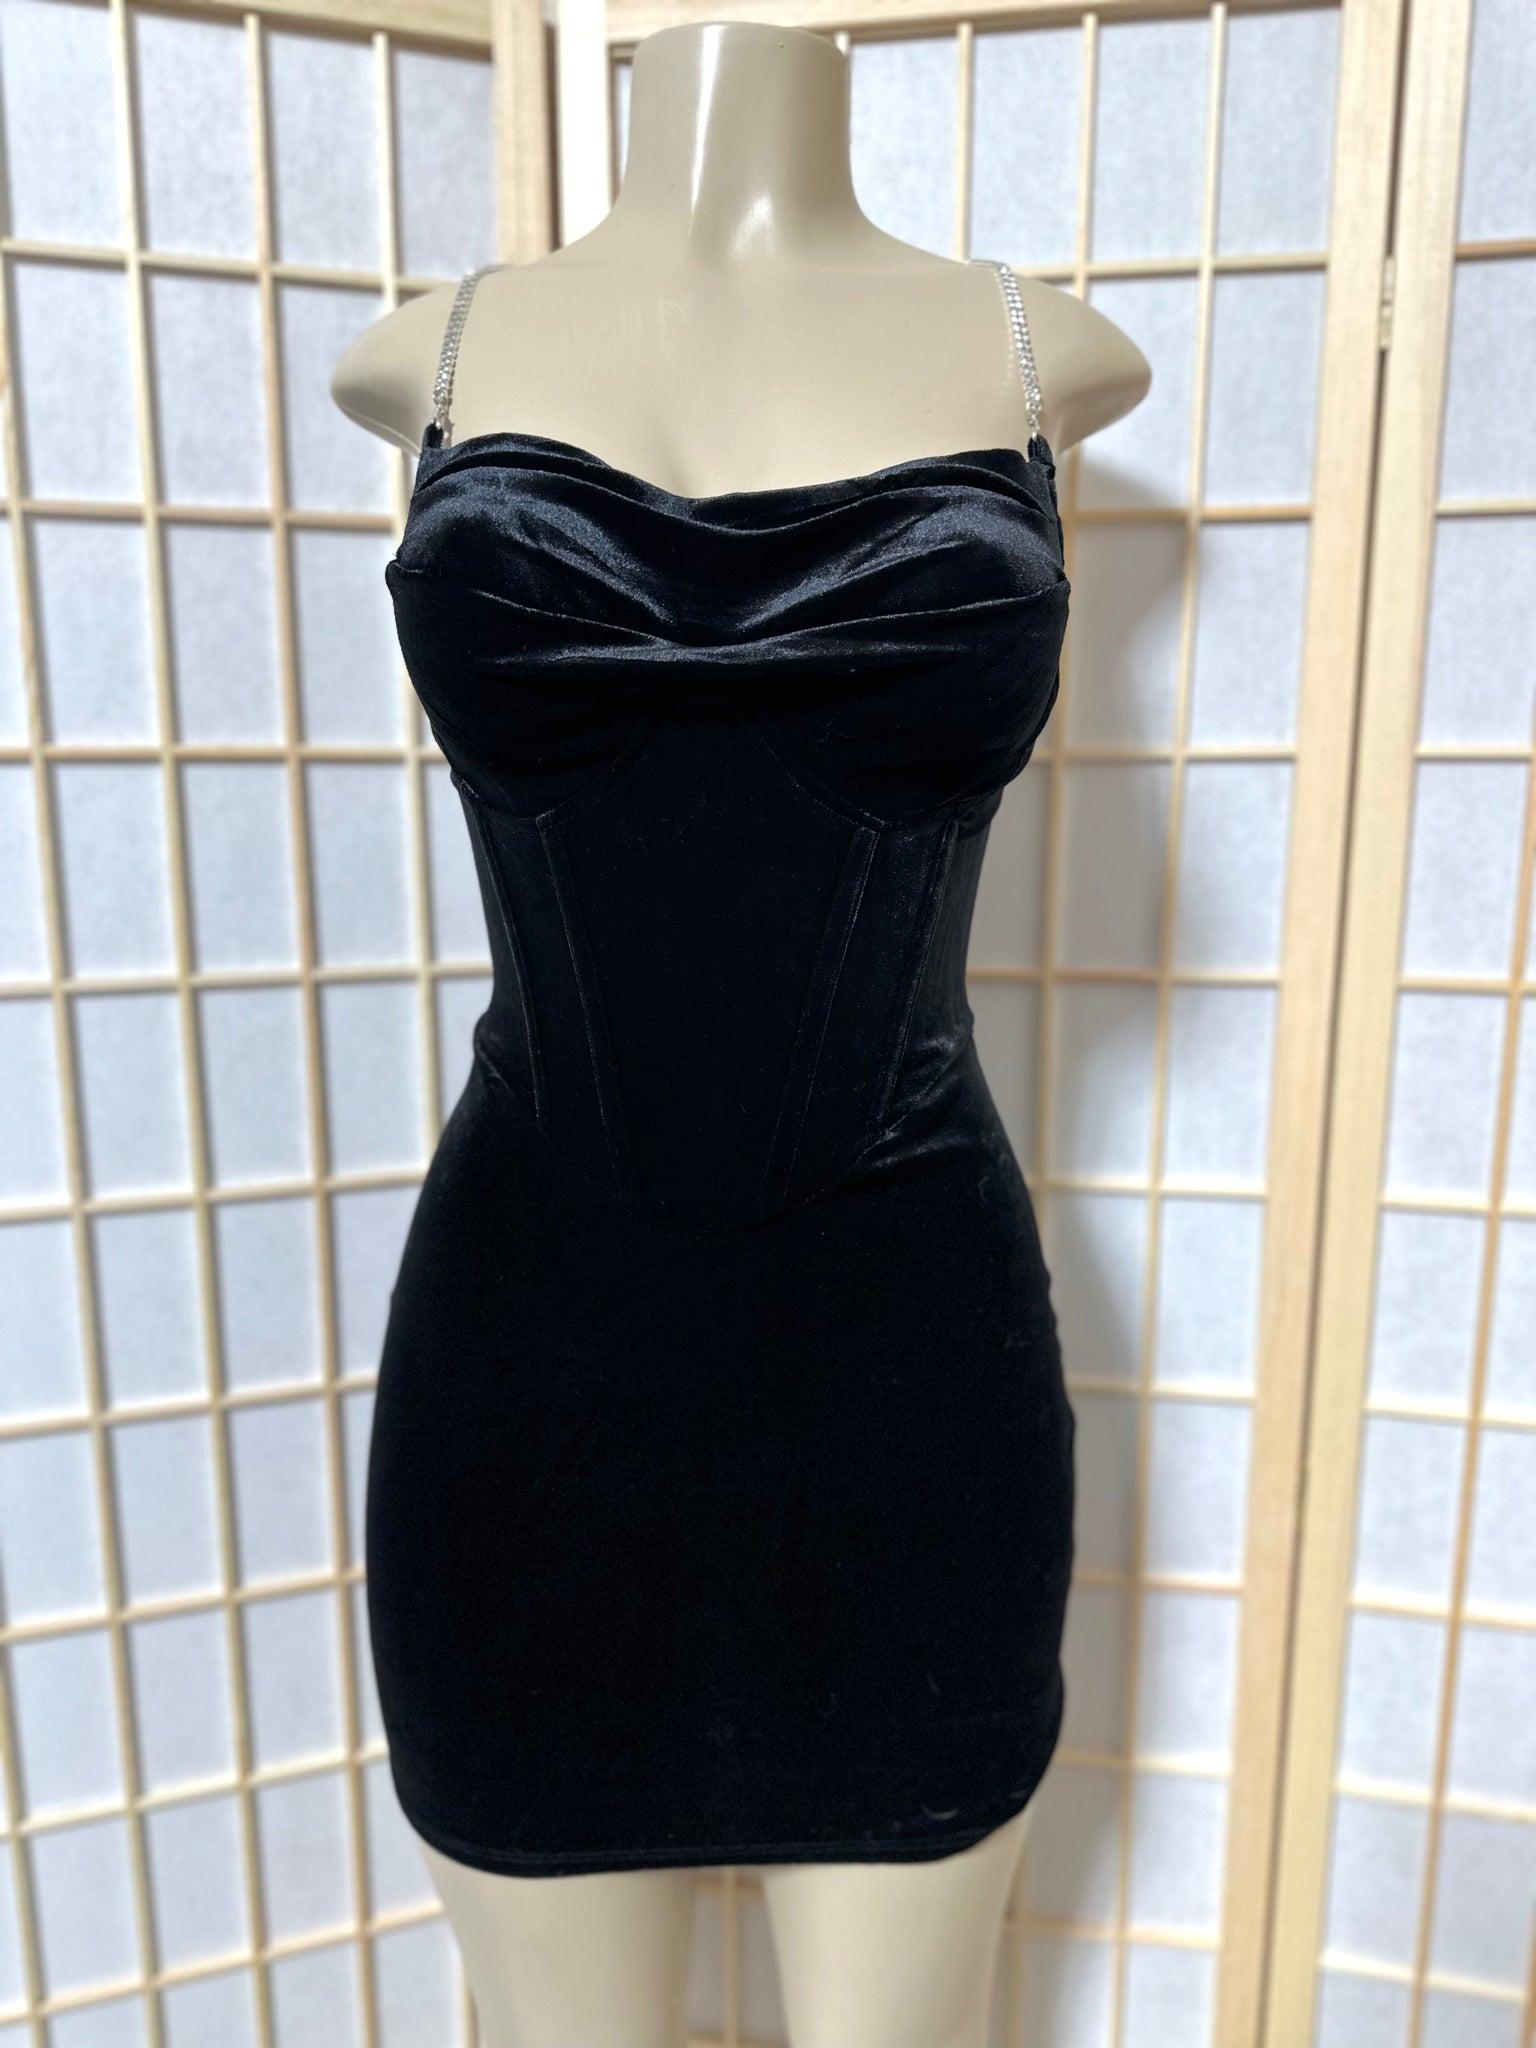 The “Velvet & Shimmer” Corset Dress